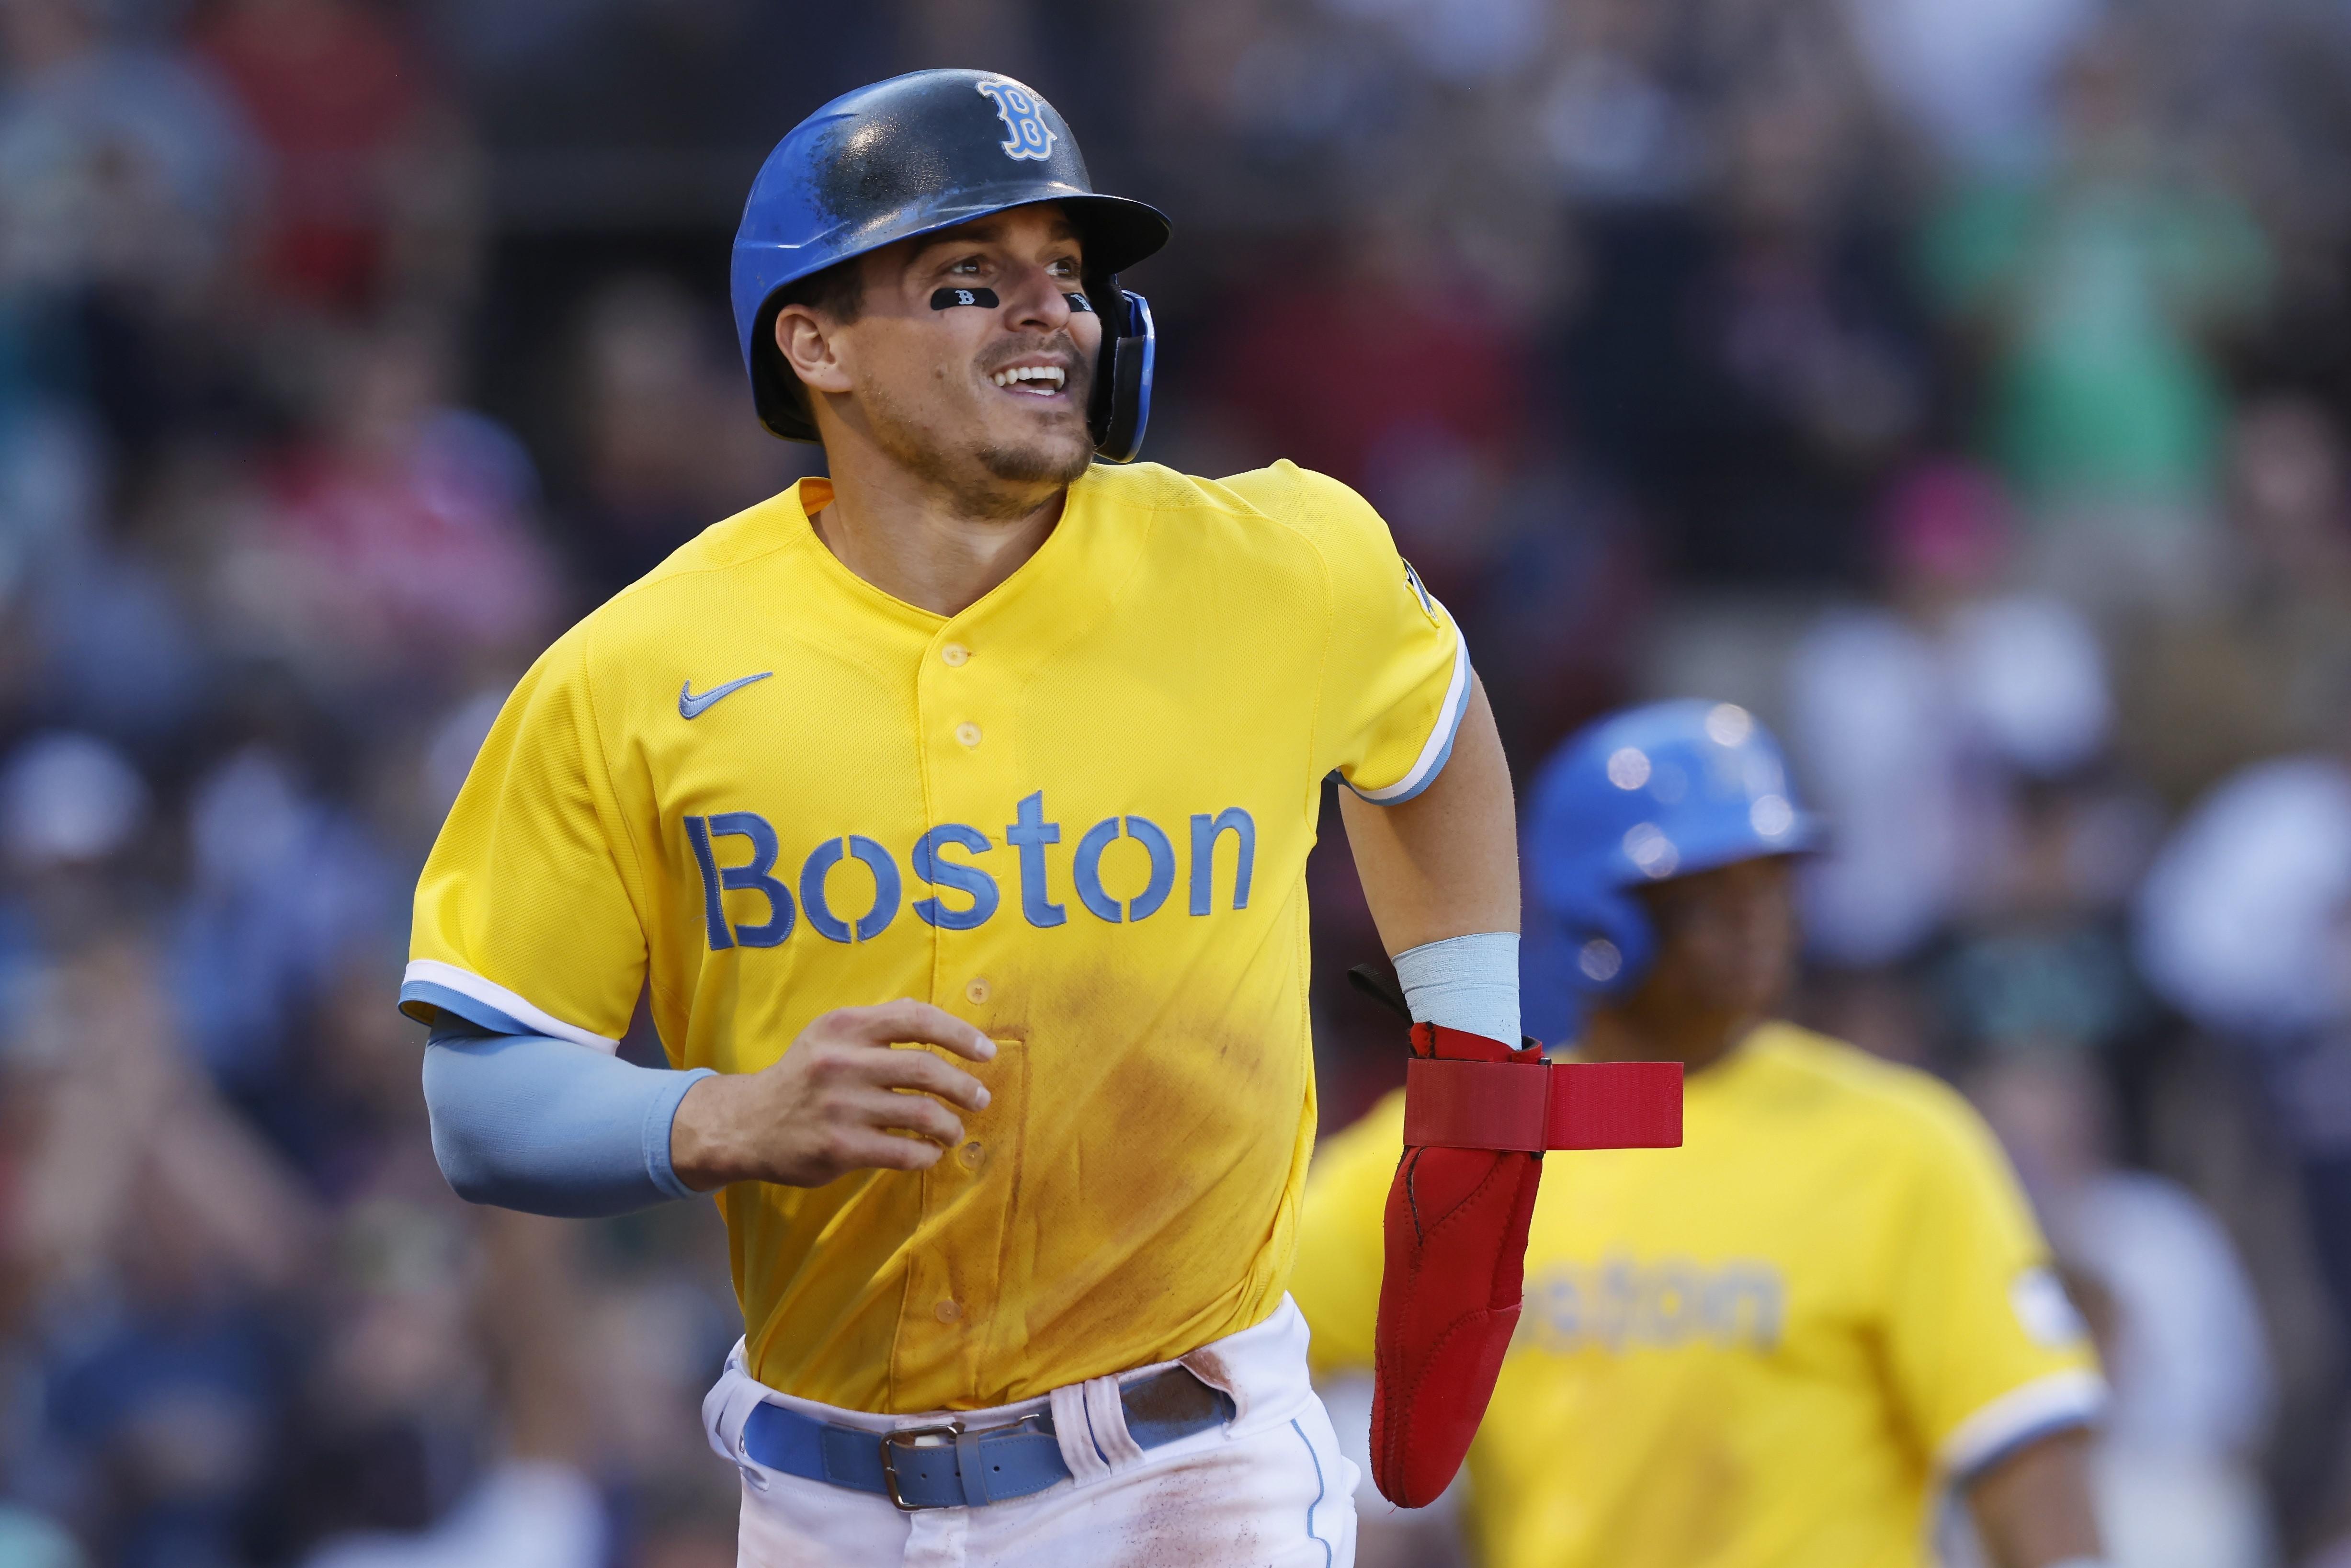 Por qué los Red Sox lucen uniformes amarillos y azules? - El Nuevo Día